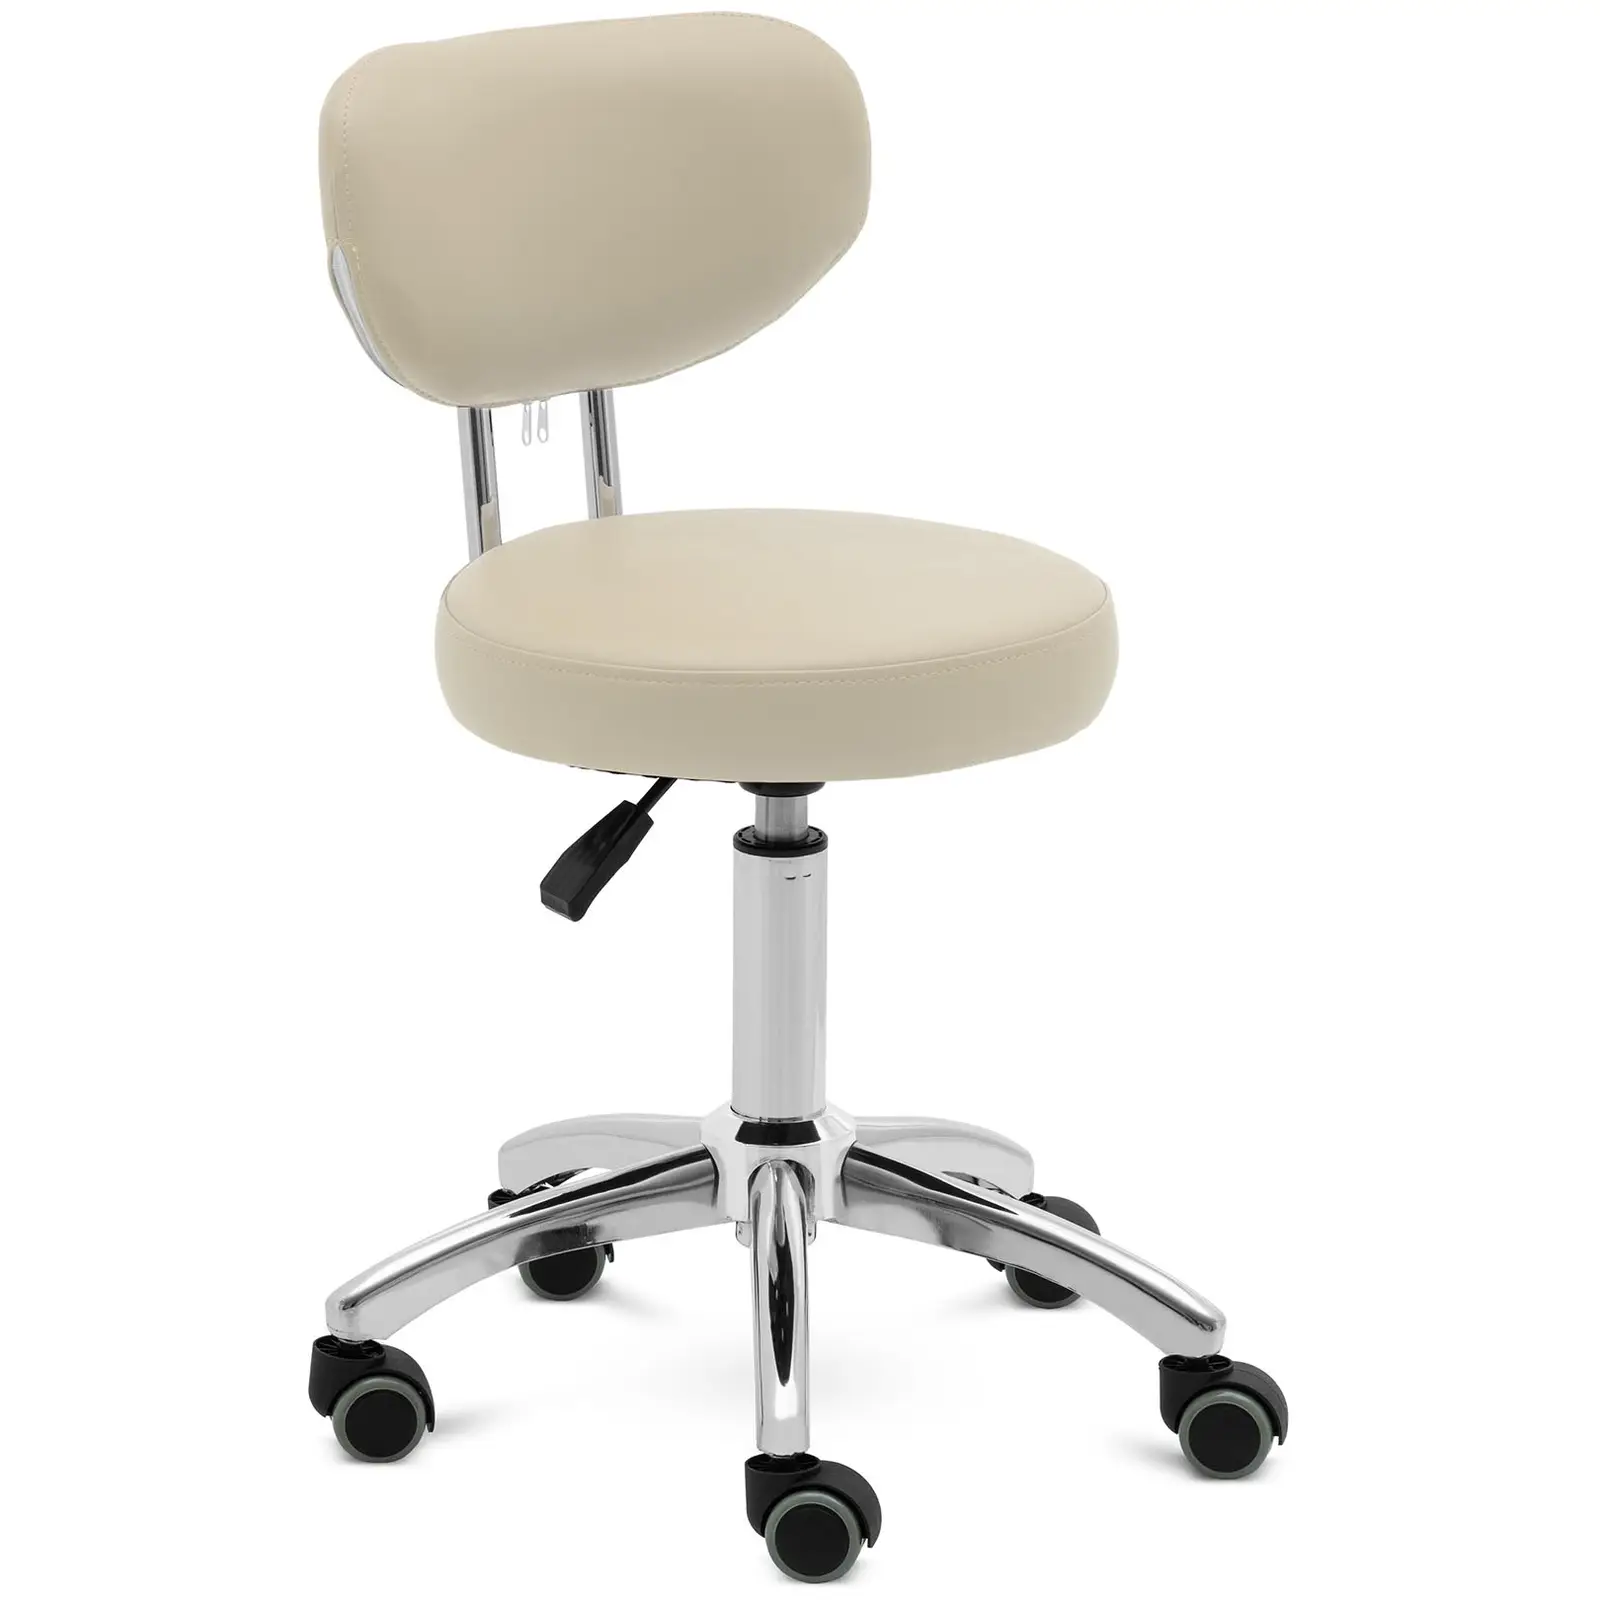 Roller stool with backrest - 46 - 60 cm - 150 kg - dark beige